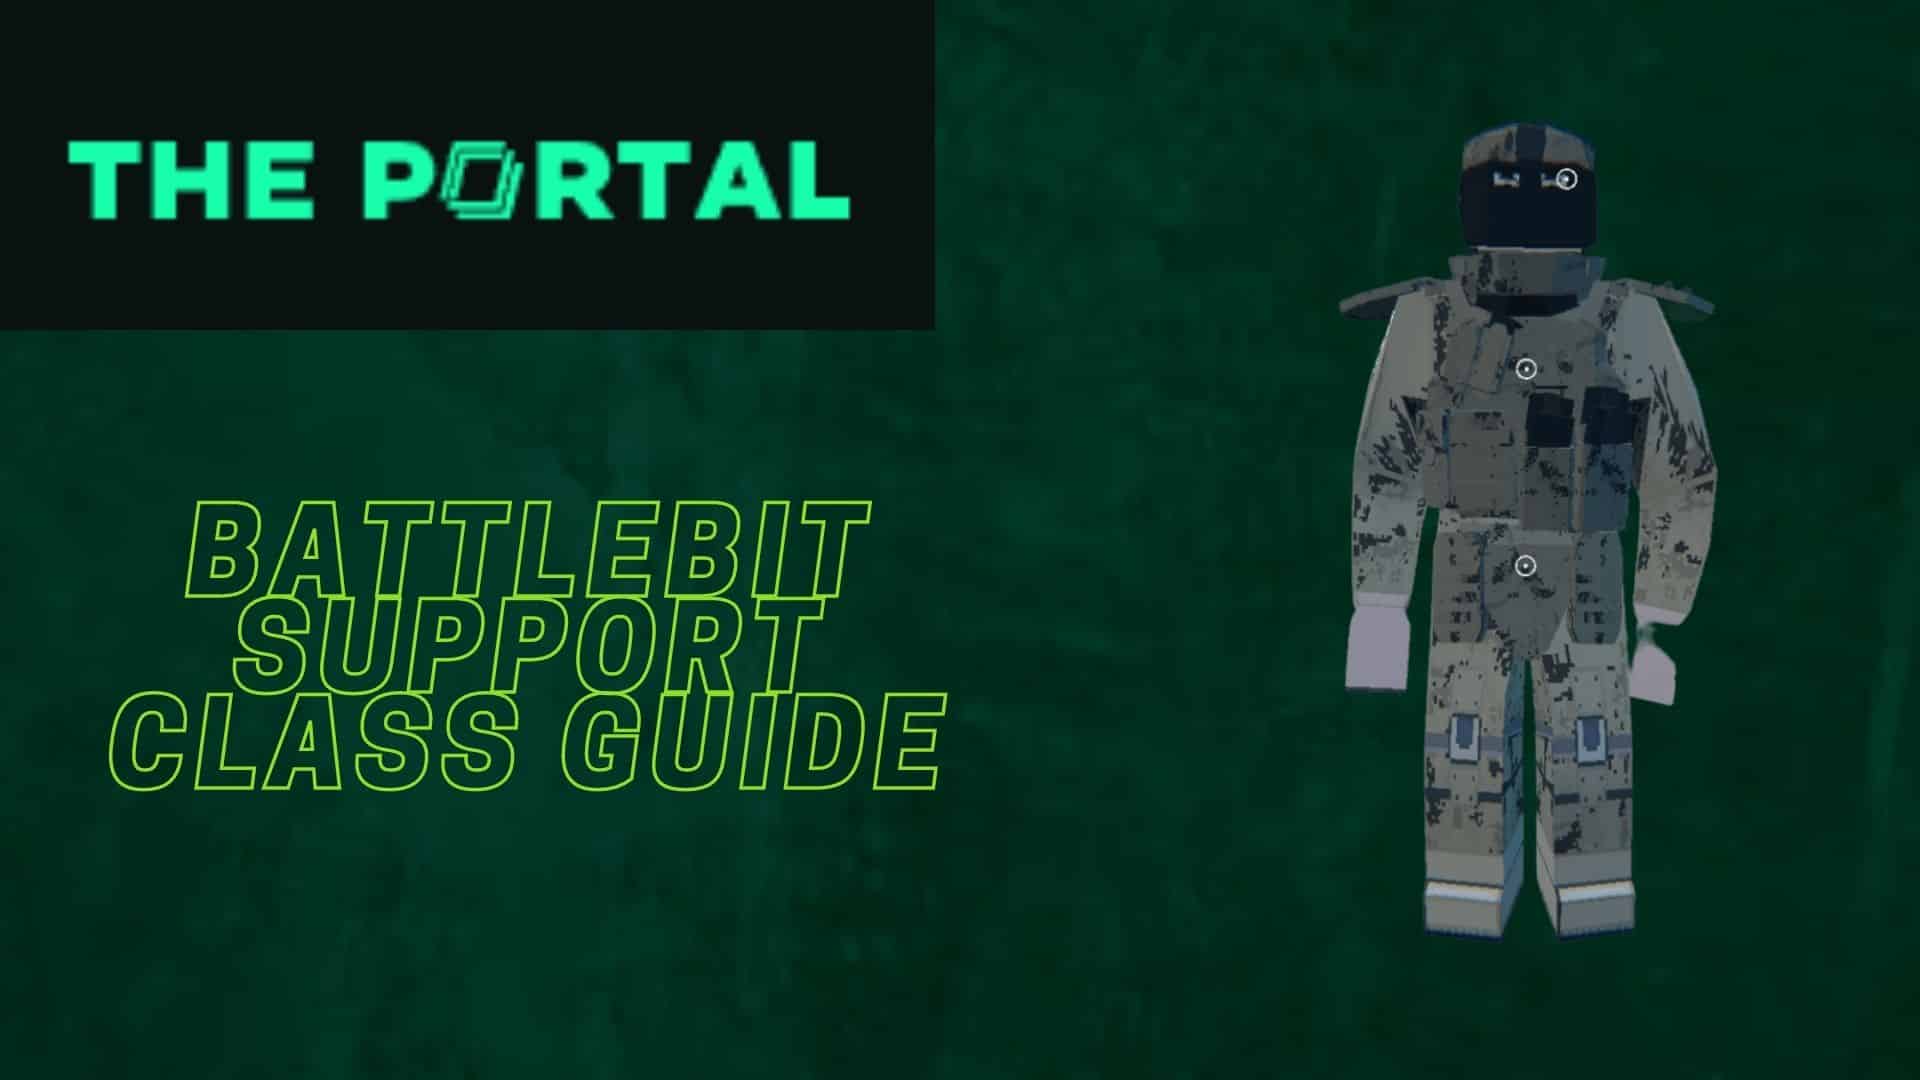 BattleBit Support Class Guide